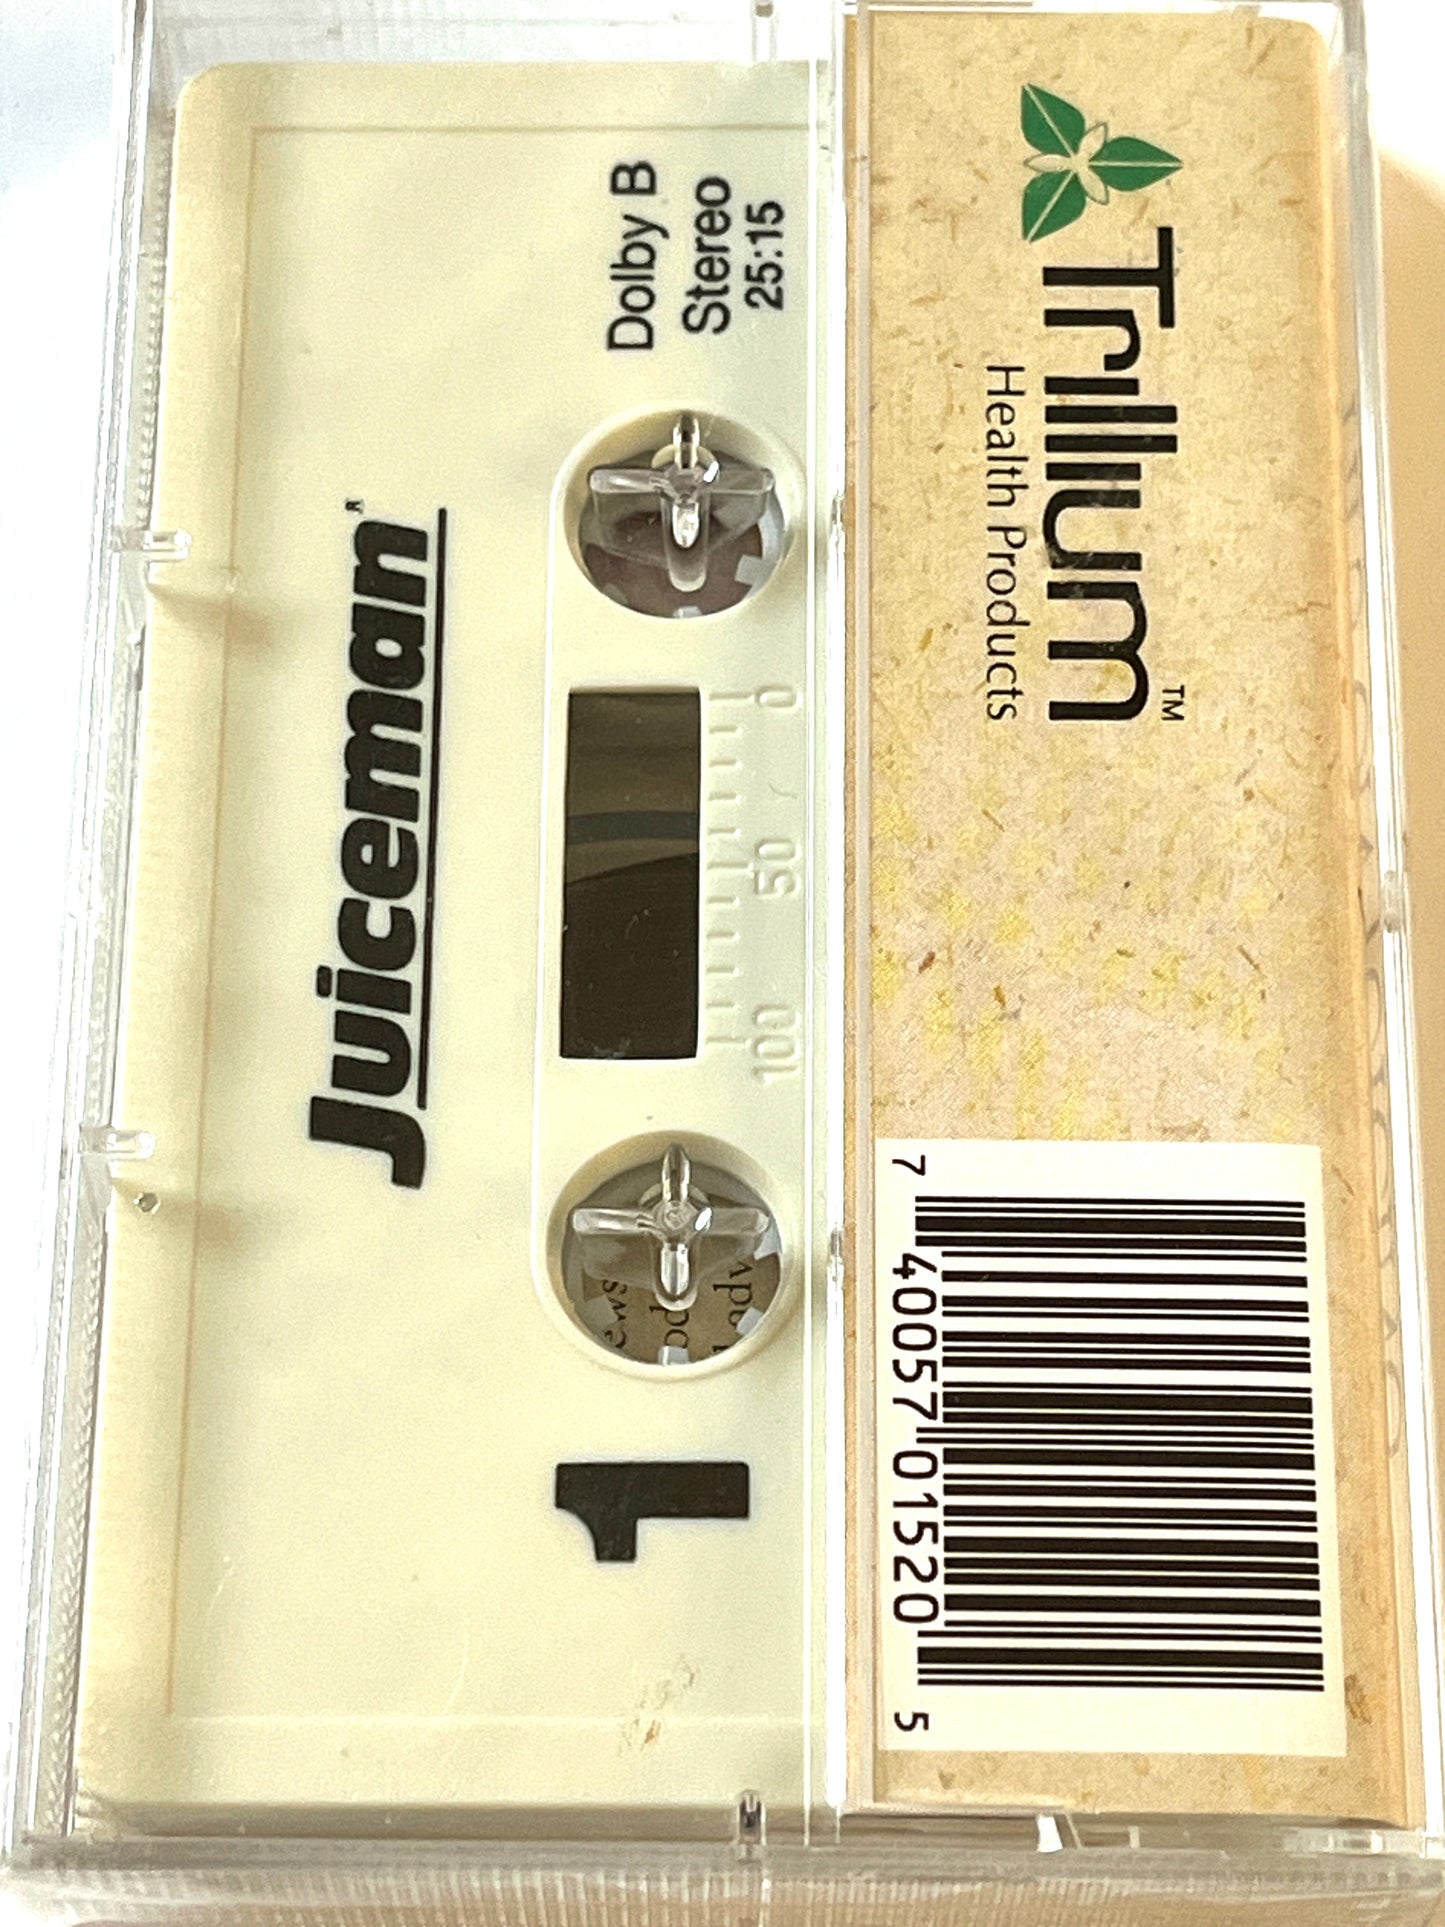 Vintage Tips On Juicing Cassette Tape